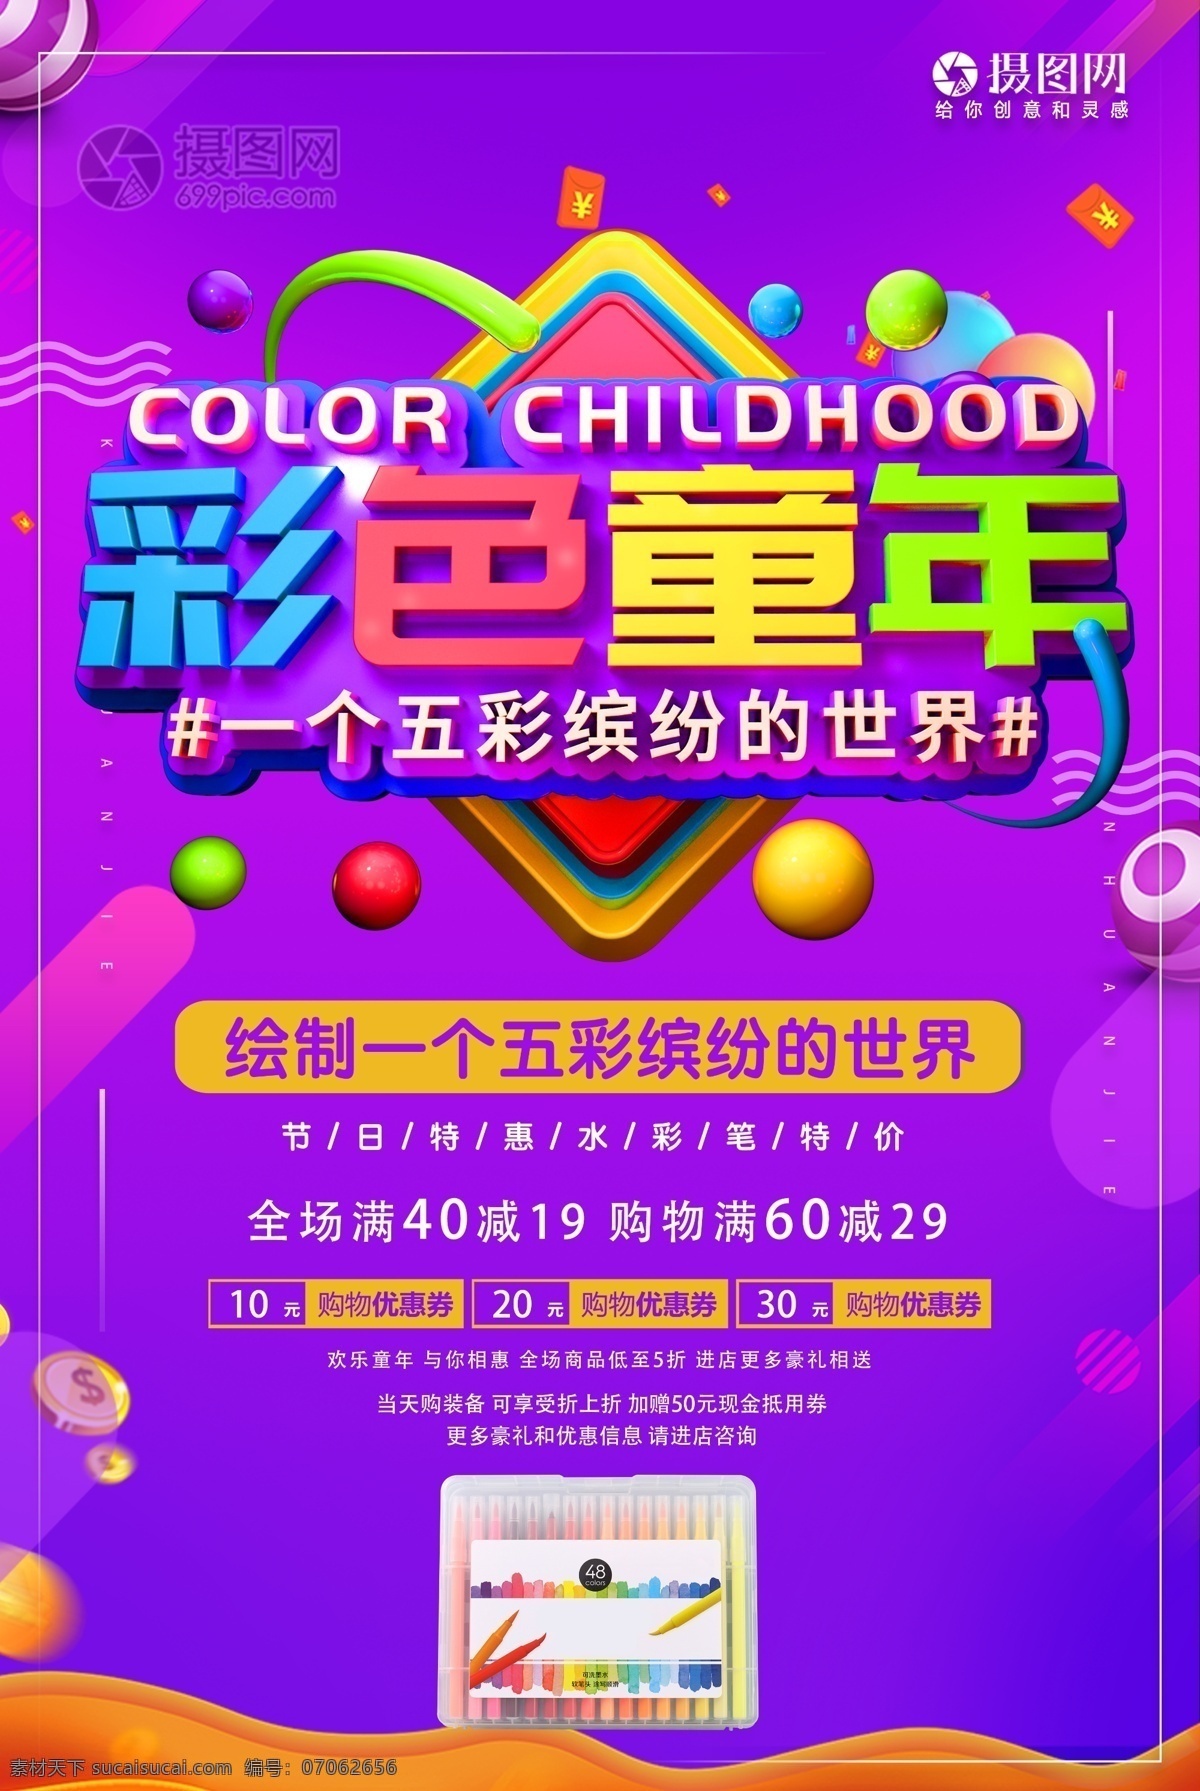 六一儿童节 彩色 童年 节日 促销活动 海报 六一 儿童节 彩色童年 促销 活动 立体字 满减 彩色铅笔